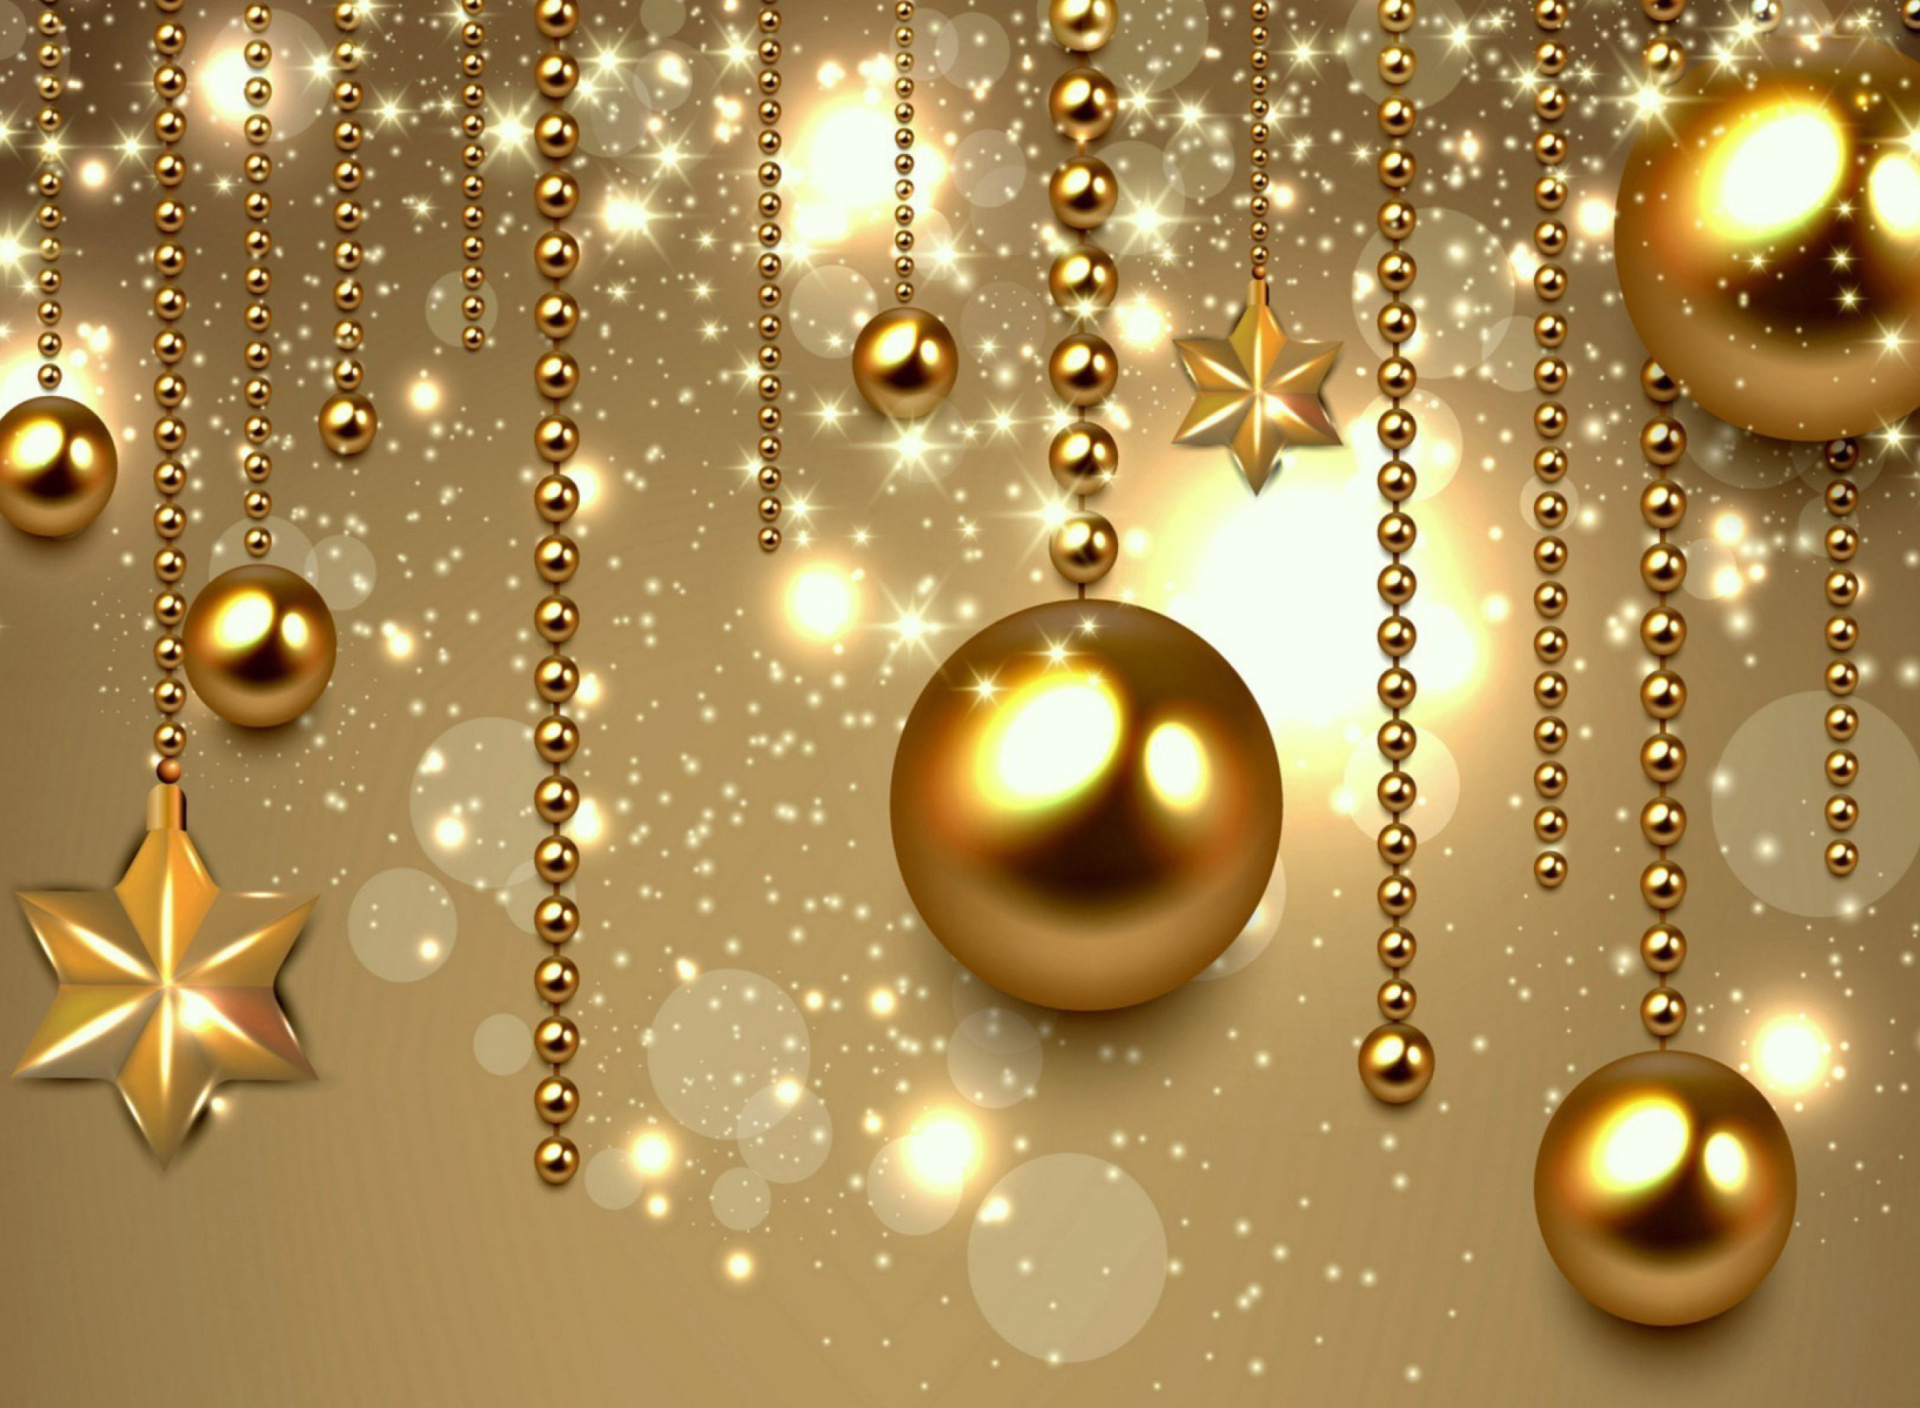 Das Golden Christmas Balls Wallpaper 1920x1408